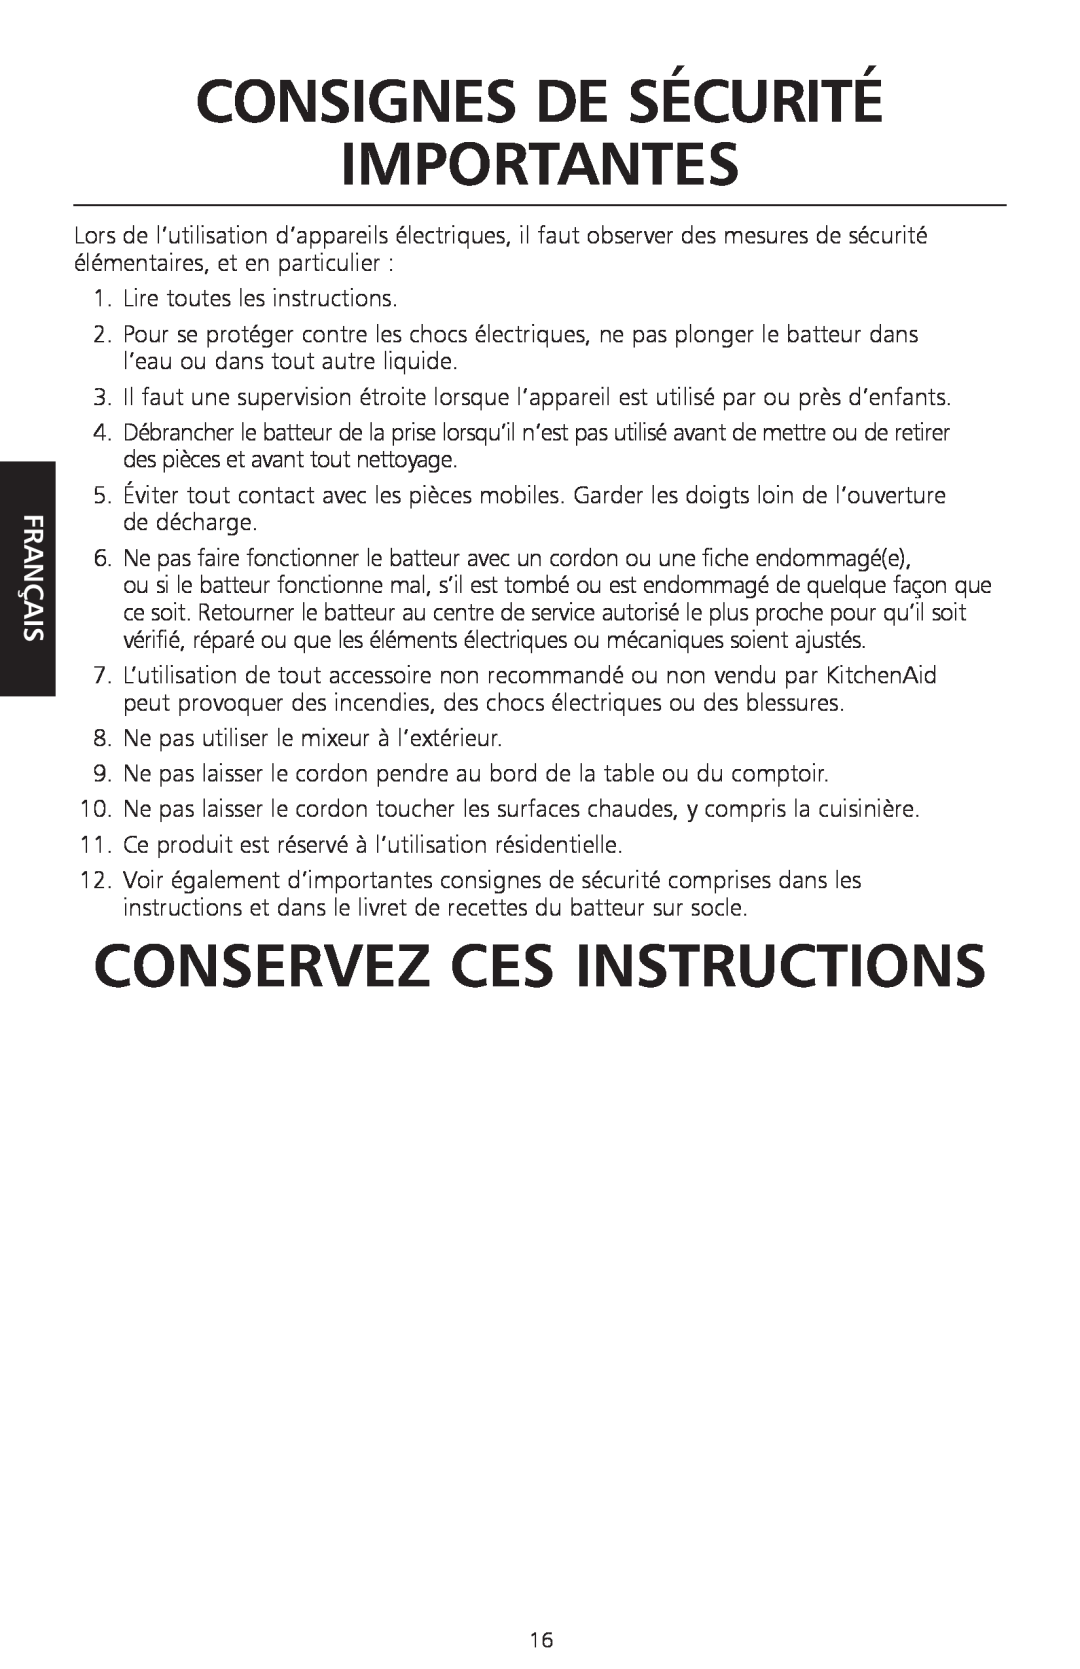 KitchenAid KPEX manual Consignes De Sécurité Importantes, Conservez Ces Instructions, Français 